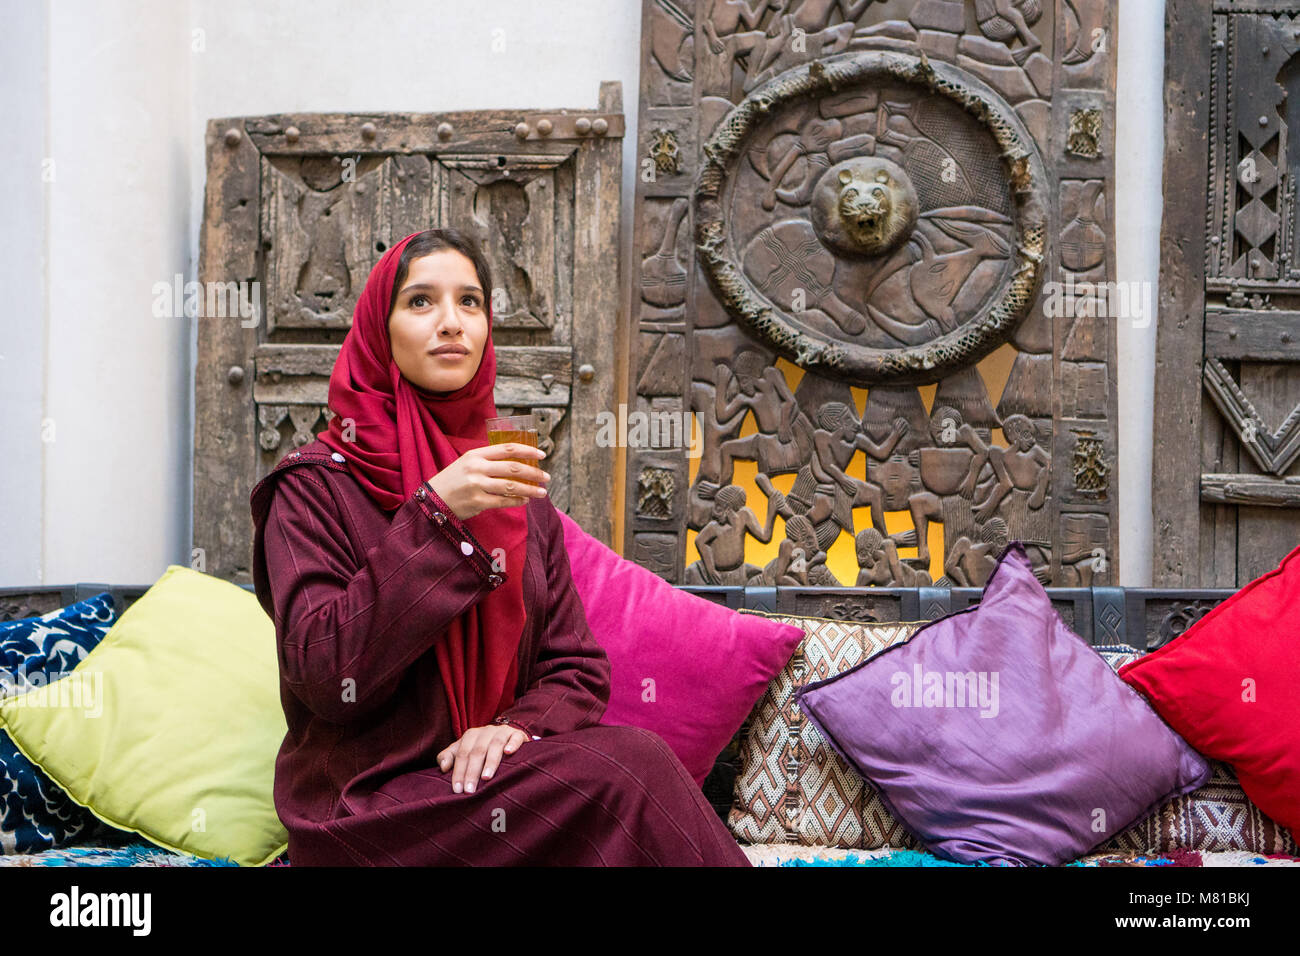 Muslimische Frau trinkt Kaffee in den traditionellen roten Kleidung mit Hijab auf dem Kopf in der traditionellen orientalischen Ambiente Stockfoto